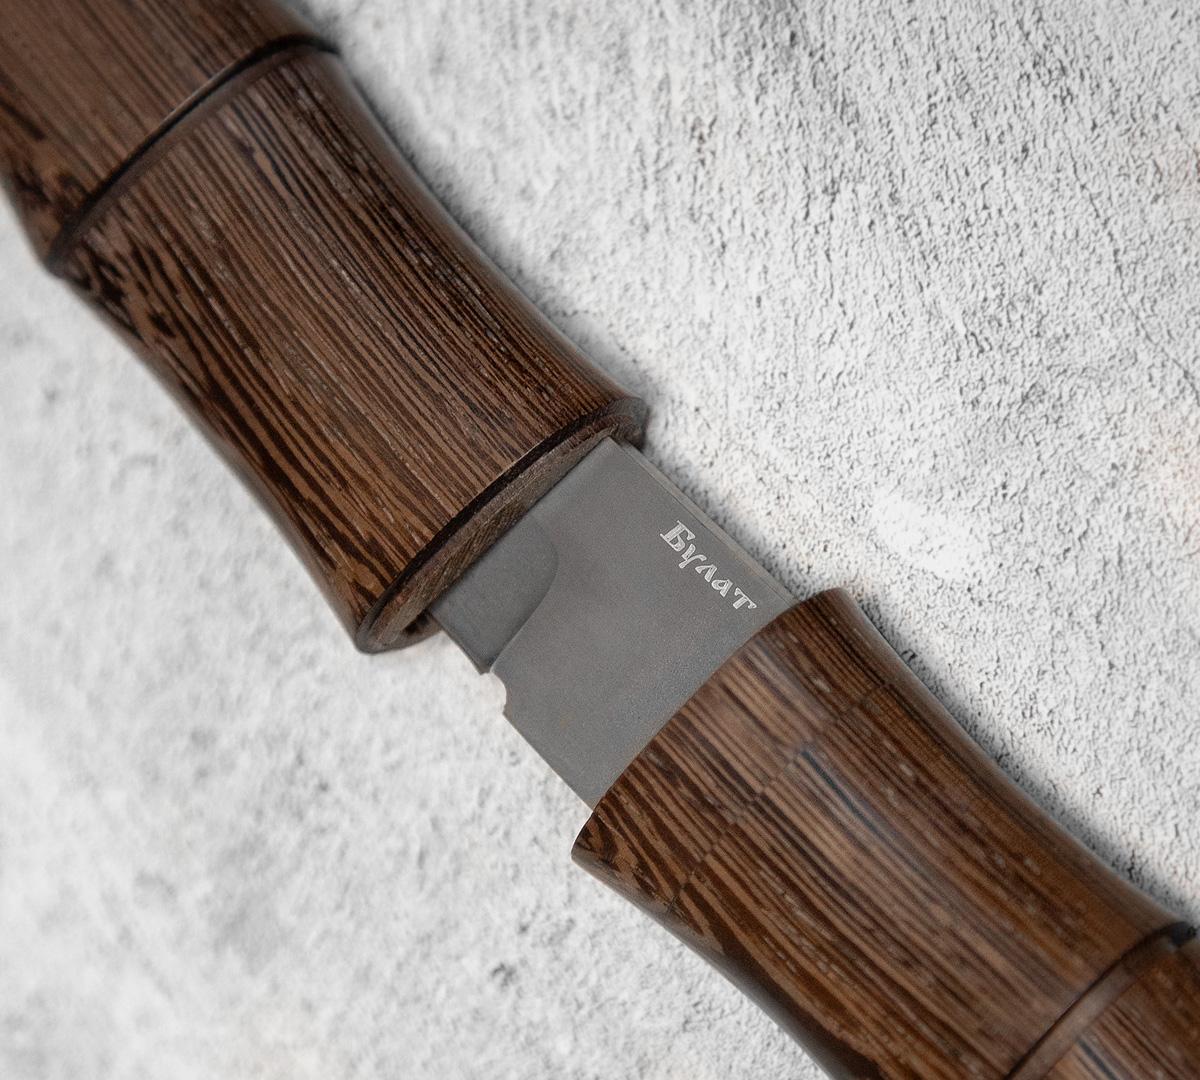 Нож танто из булатной стали в деревянных ножнах